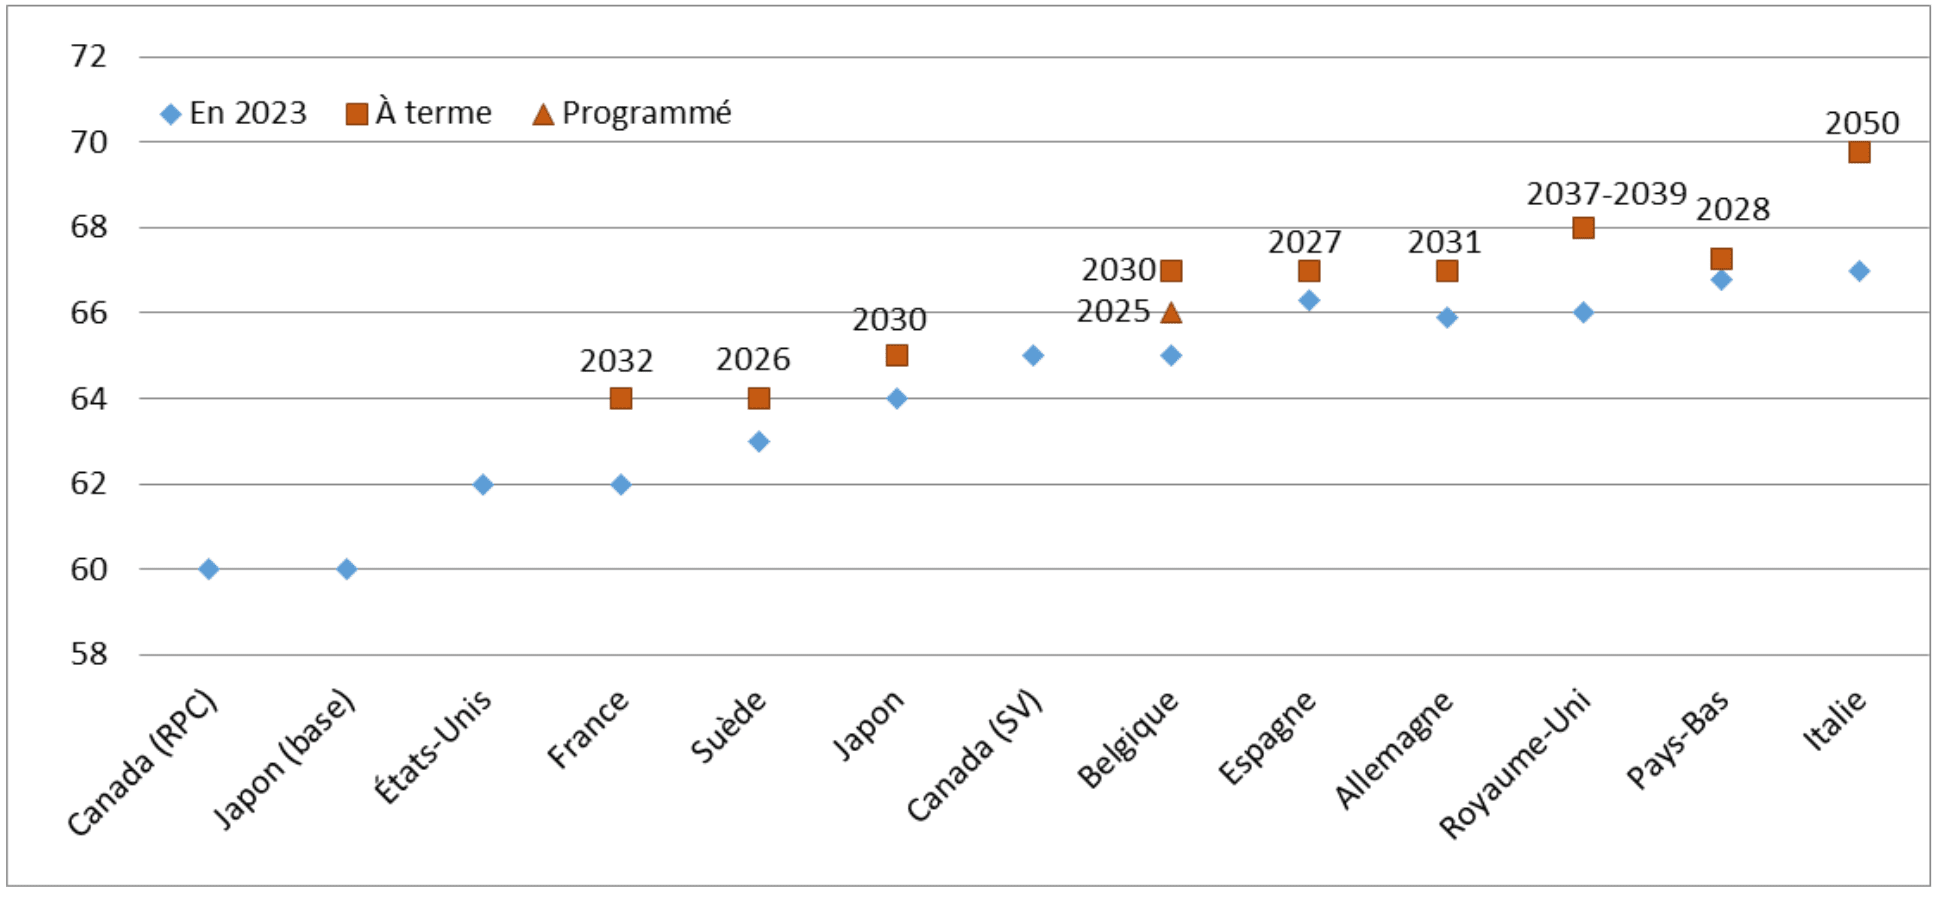 Âges d’ouverture des droits au 1er janvier 2023 et à terme dans divers pays (source COR)